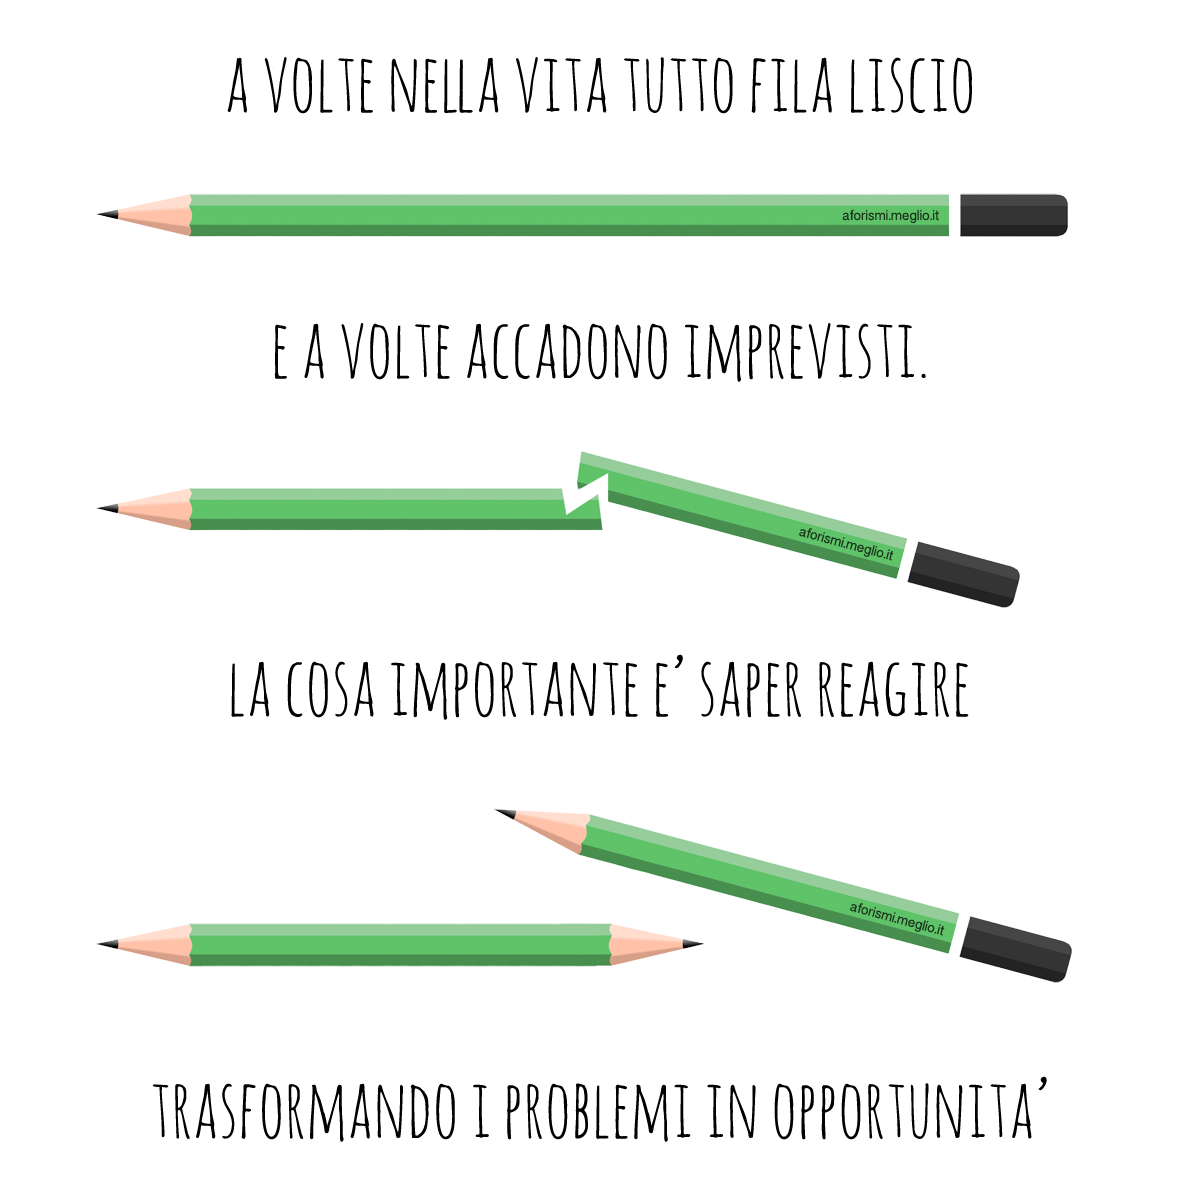 vita-problemi-opportunita-soluzioni-da-una-matita-a-due-matite.png